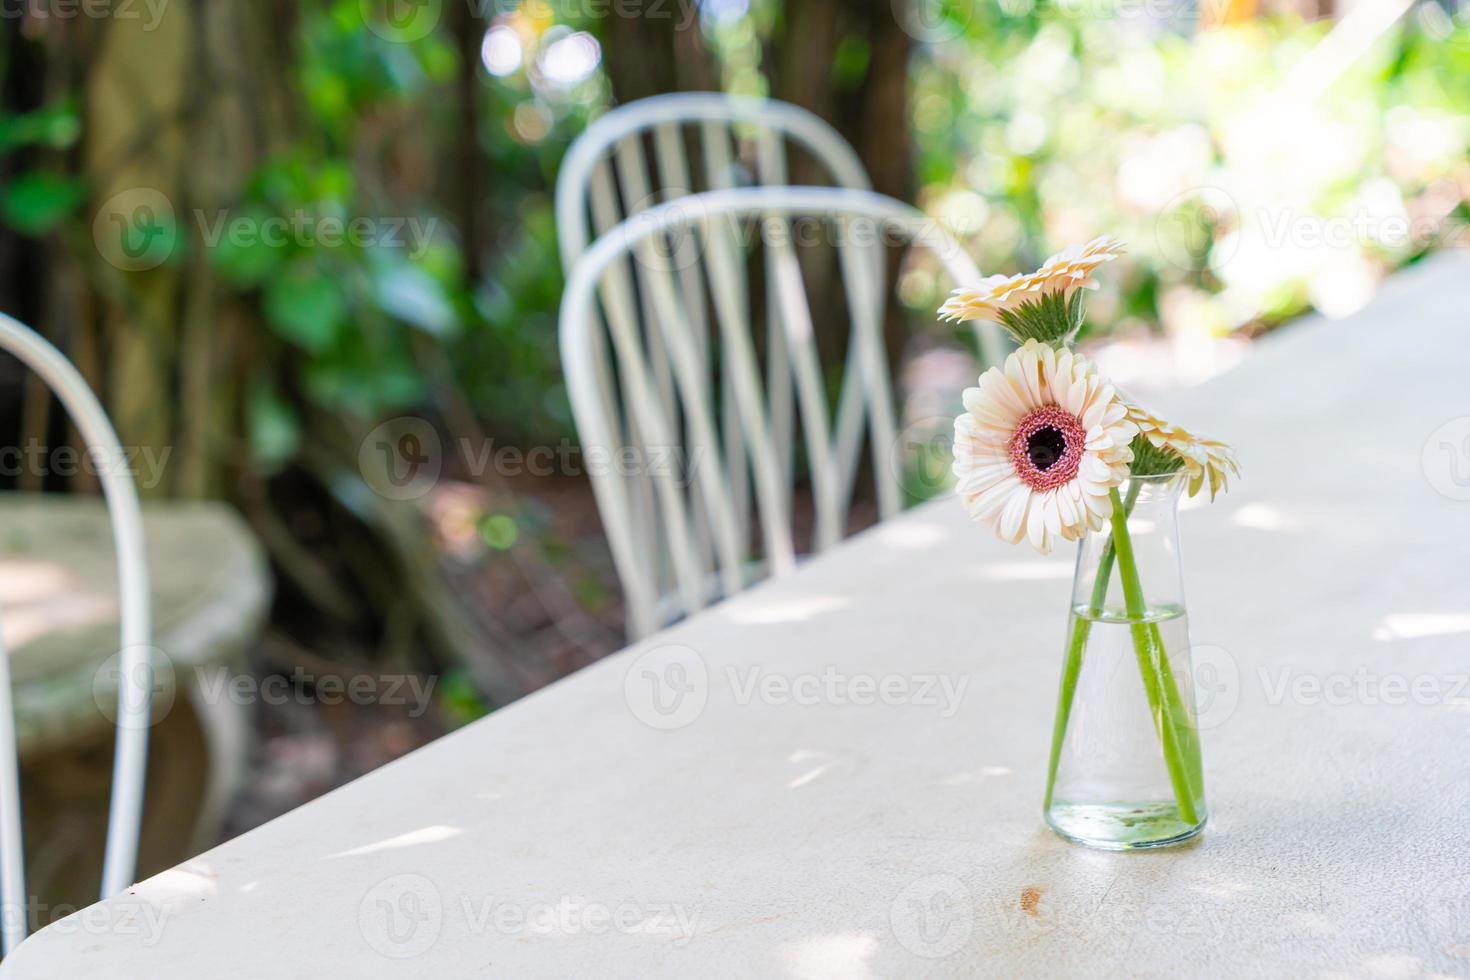 linda flor em vaso decorado na mesa foto